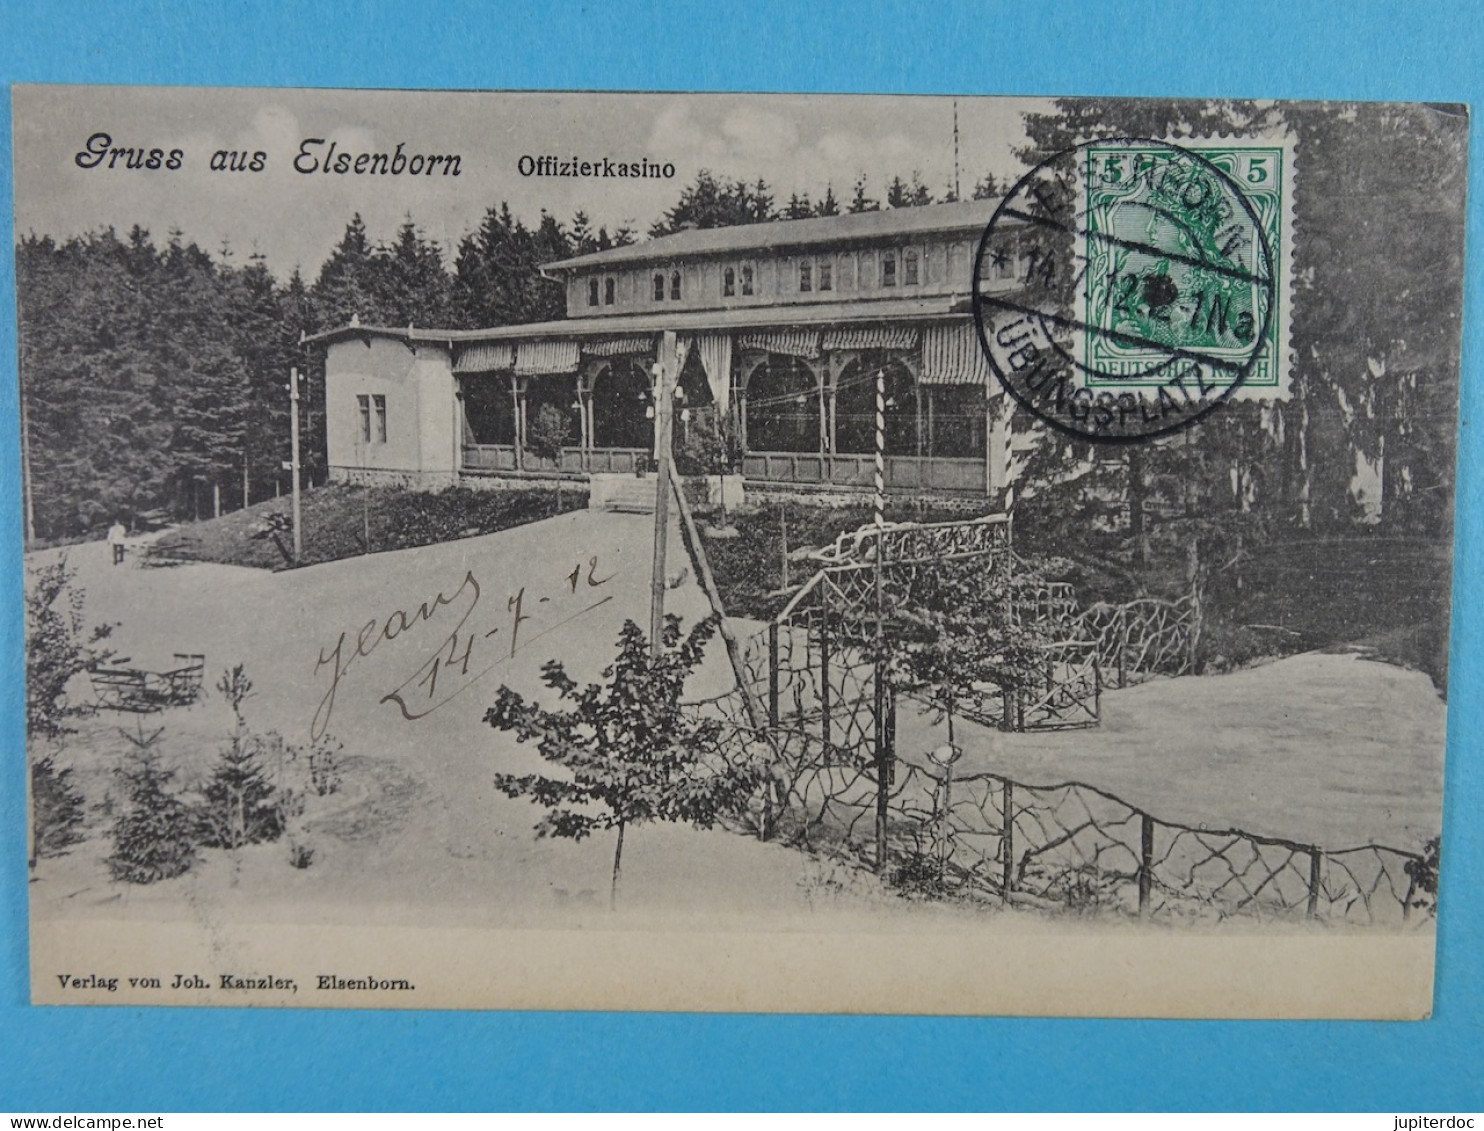 Gruss Aus Elsenborn Offizierkasino - Elsenborn (camp)